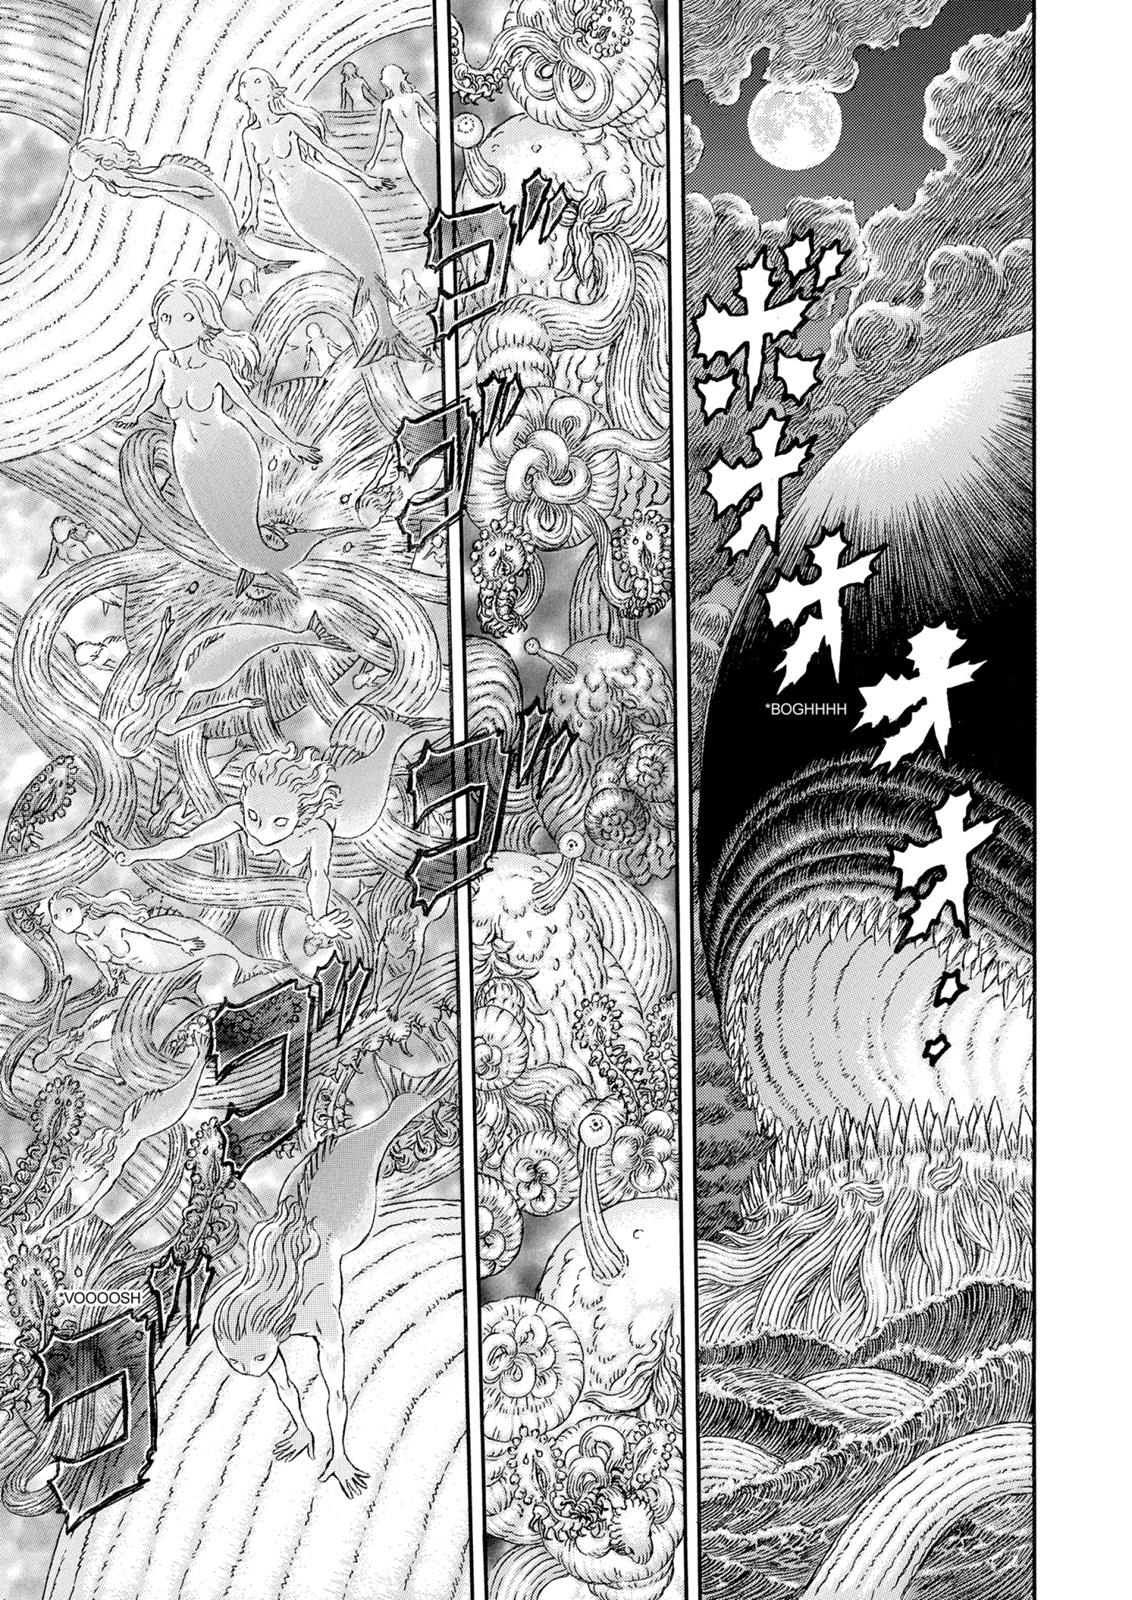 Berserk Manga Chapter 325 image 13